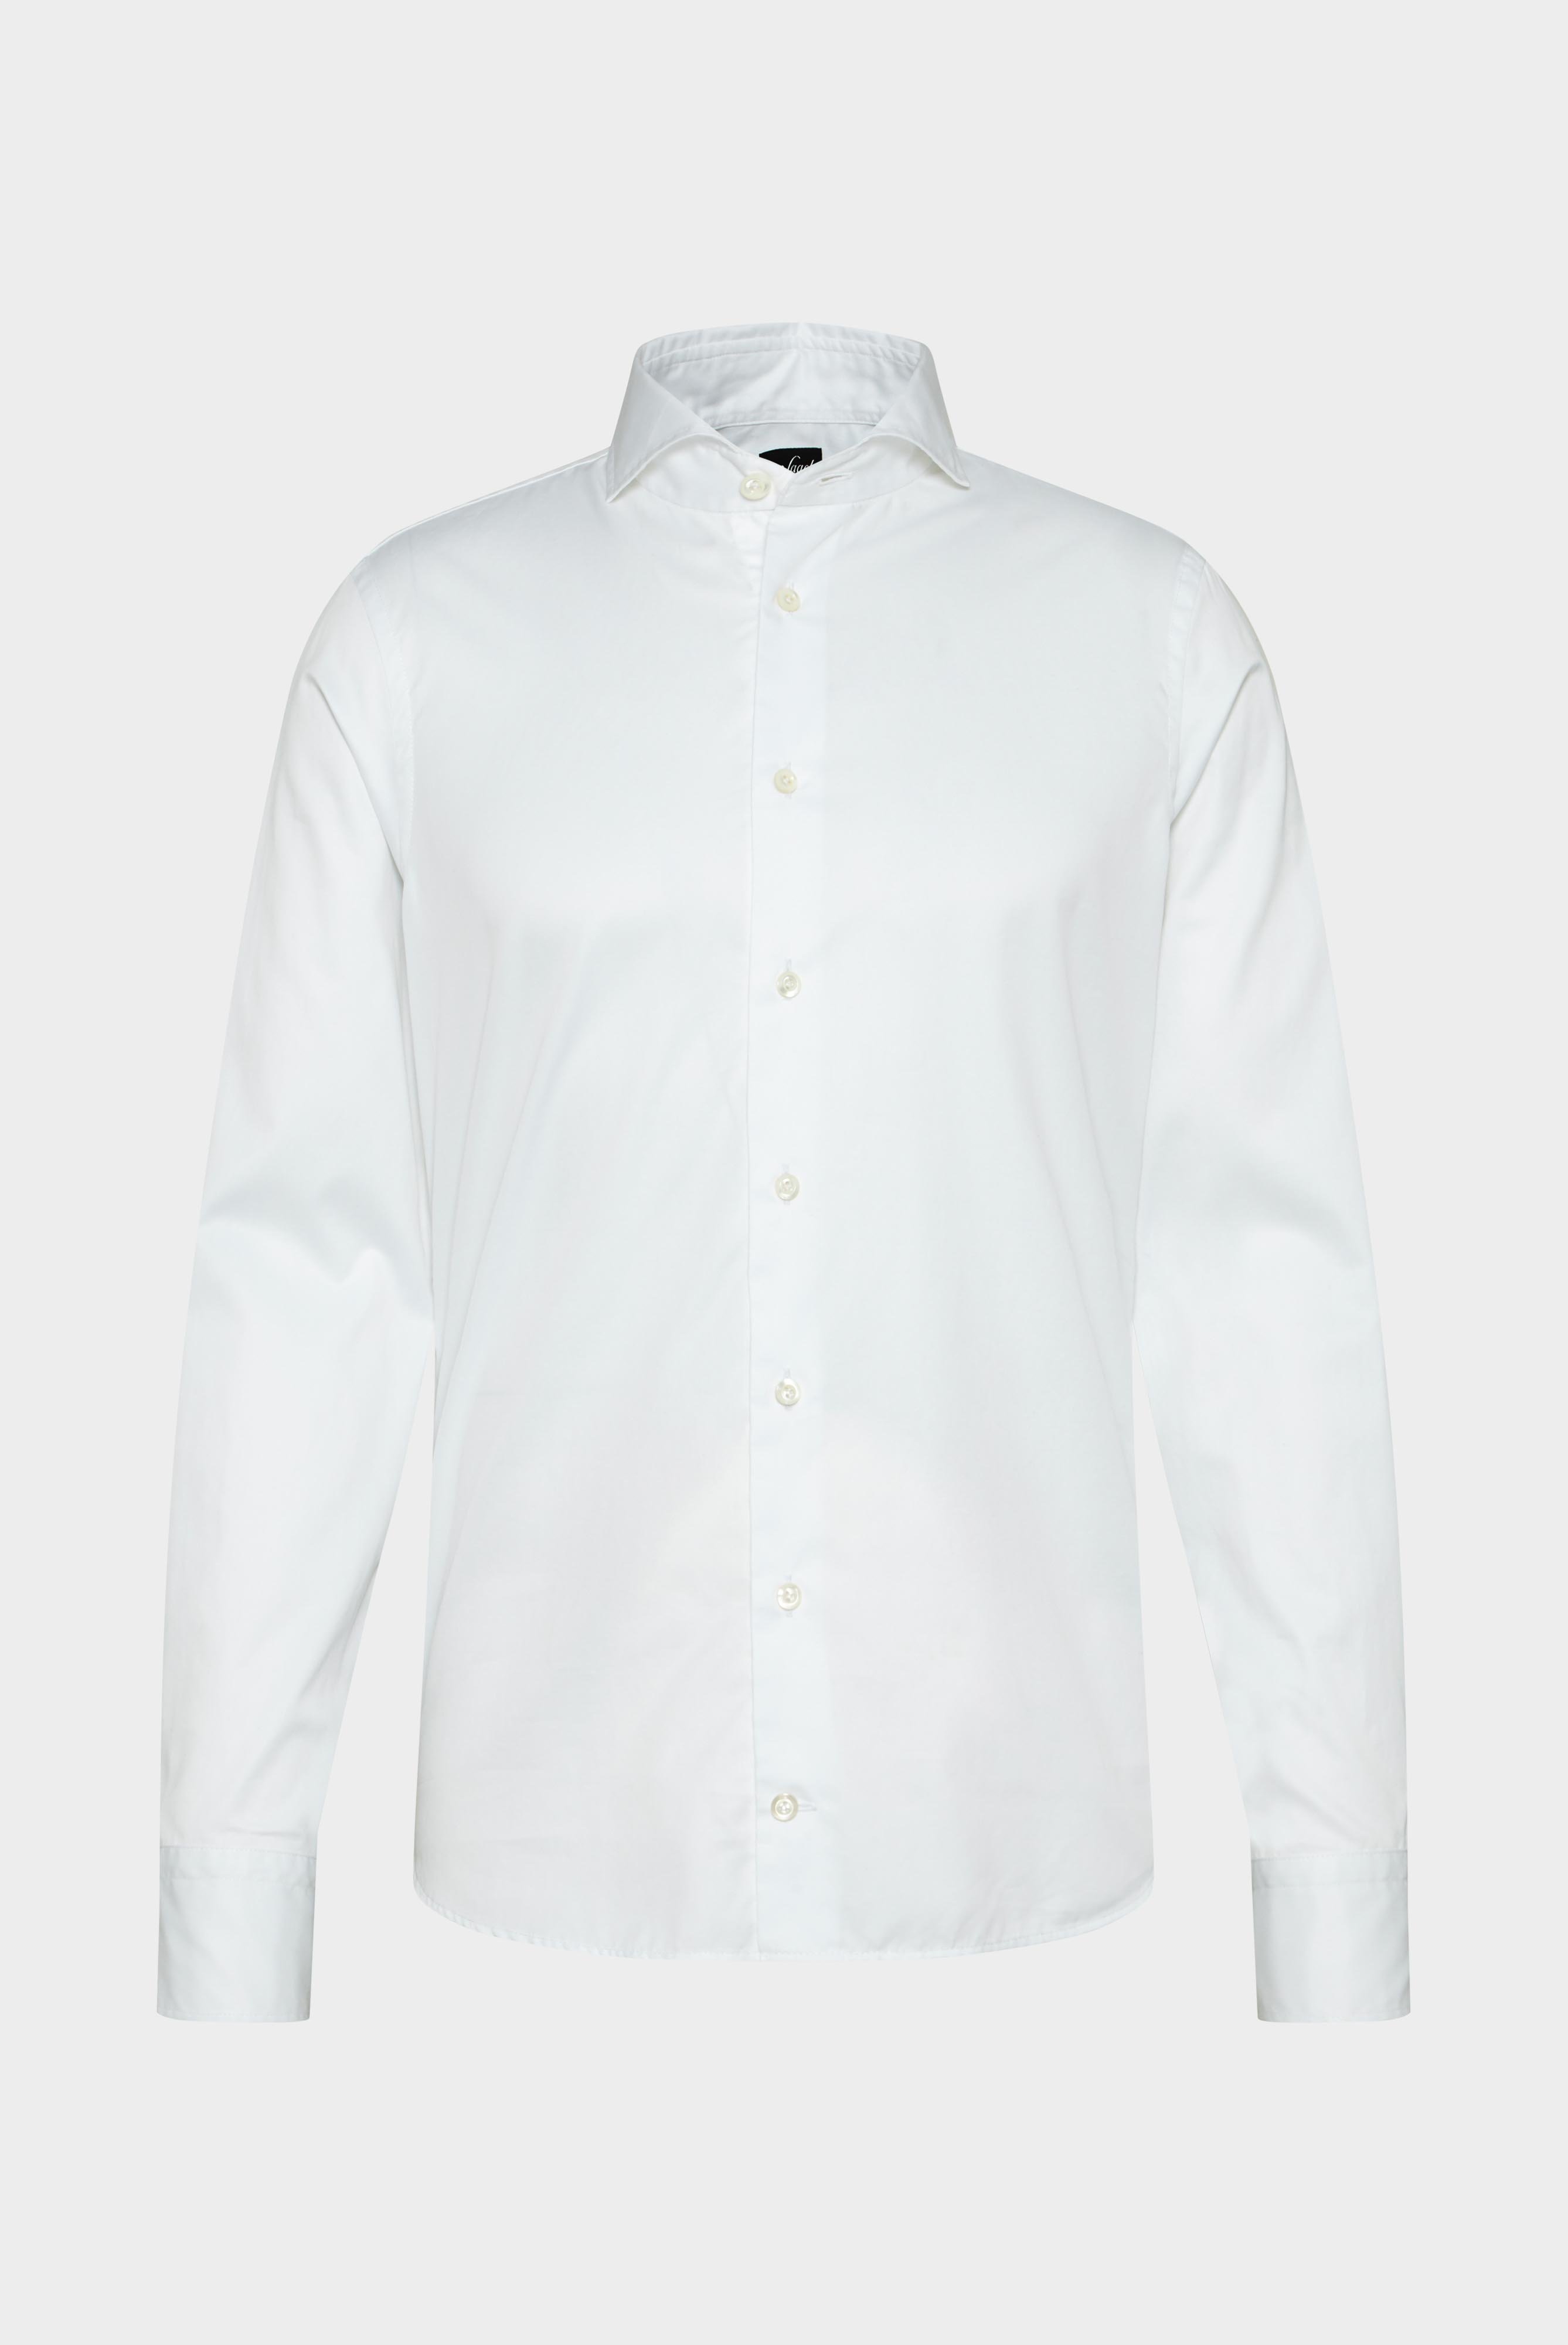 Business Shirts+Soft Washed Fine Twill Shirt+20.2015.EB.160708.000.41